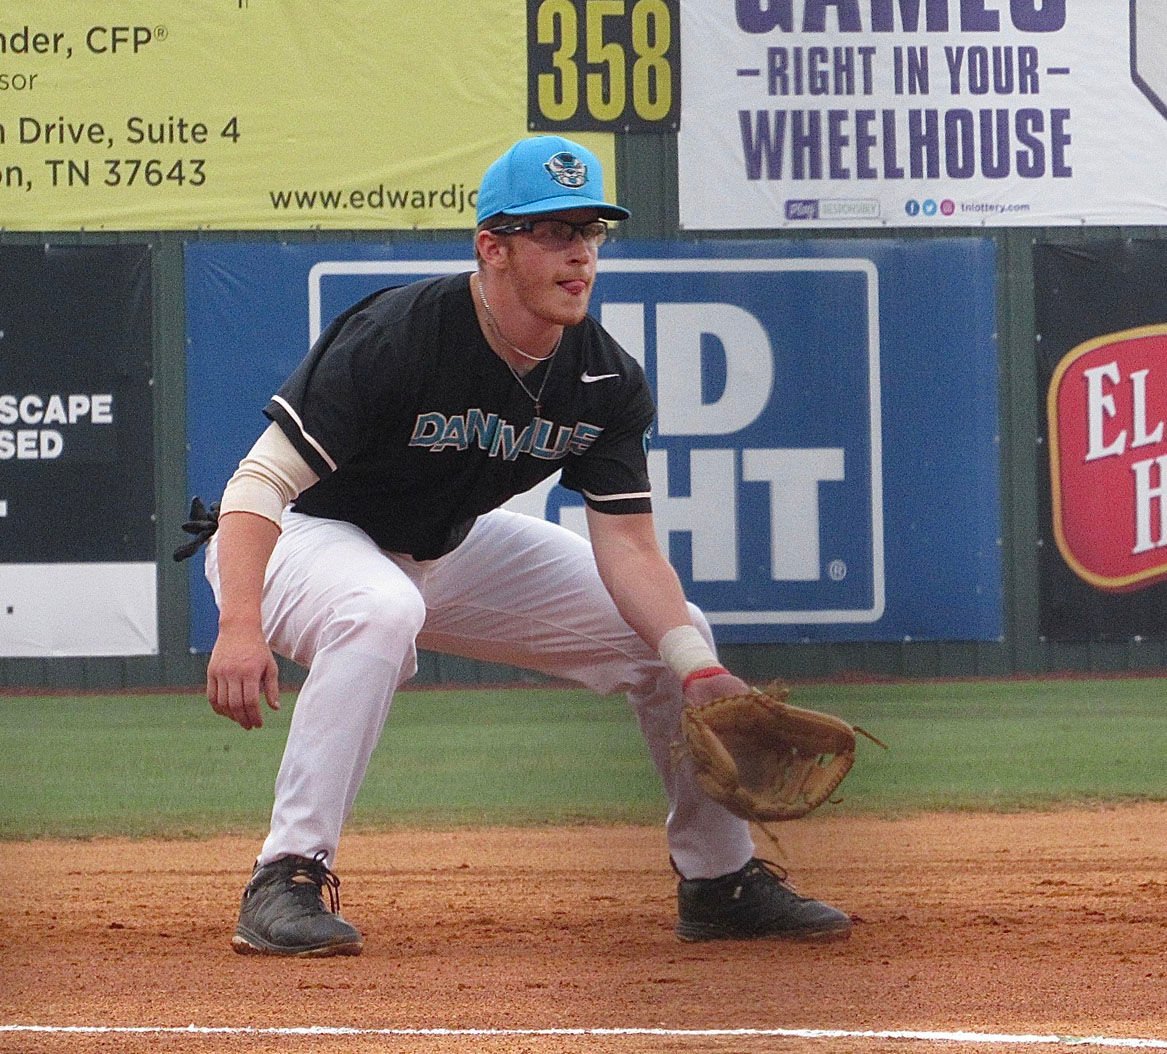 Jake Boone - Baseball - Princeton University Athletics